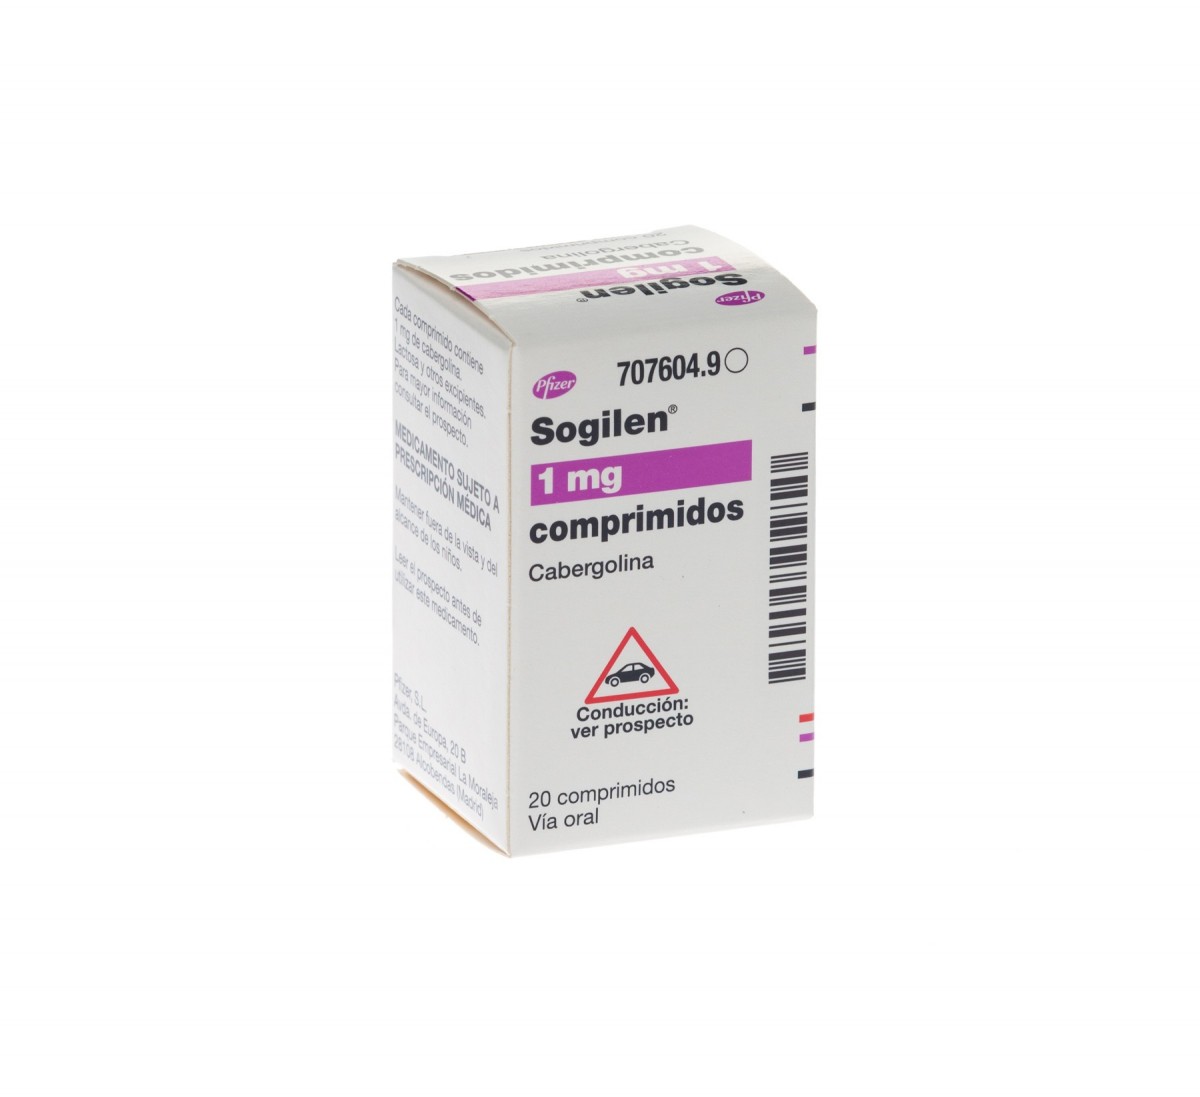 SOGILEN 1 mg COMPRIMIDOS,20 comprimidos fotografía del envase.